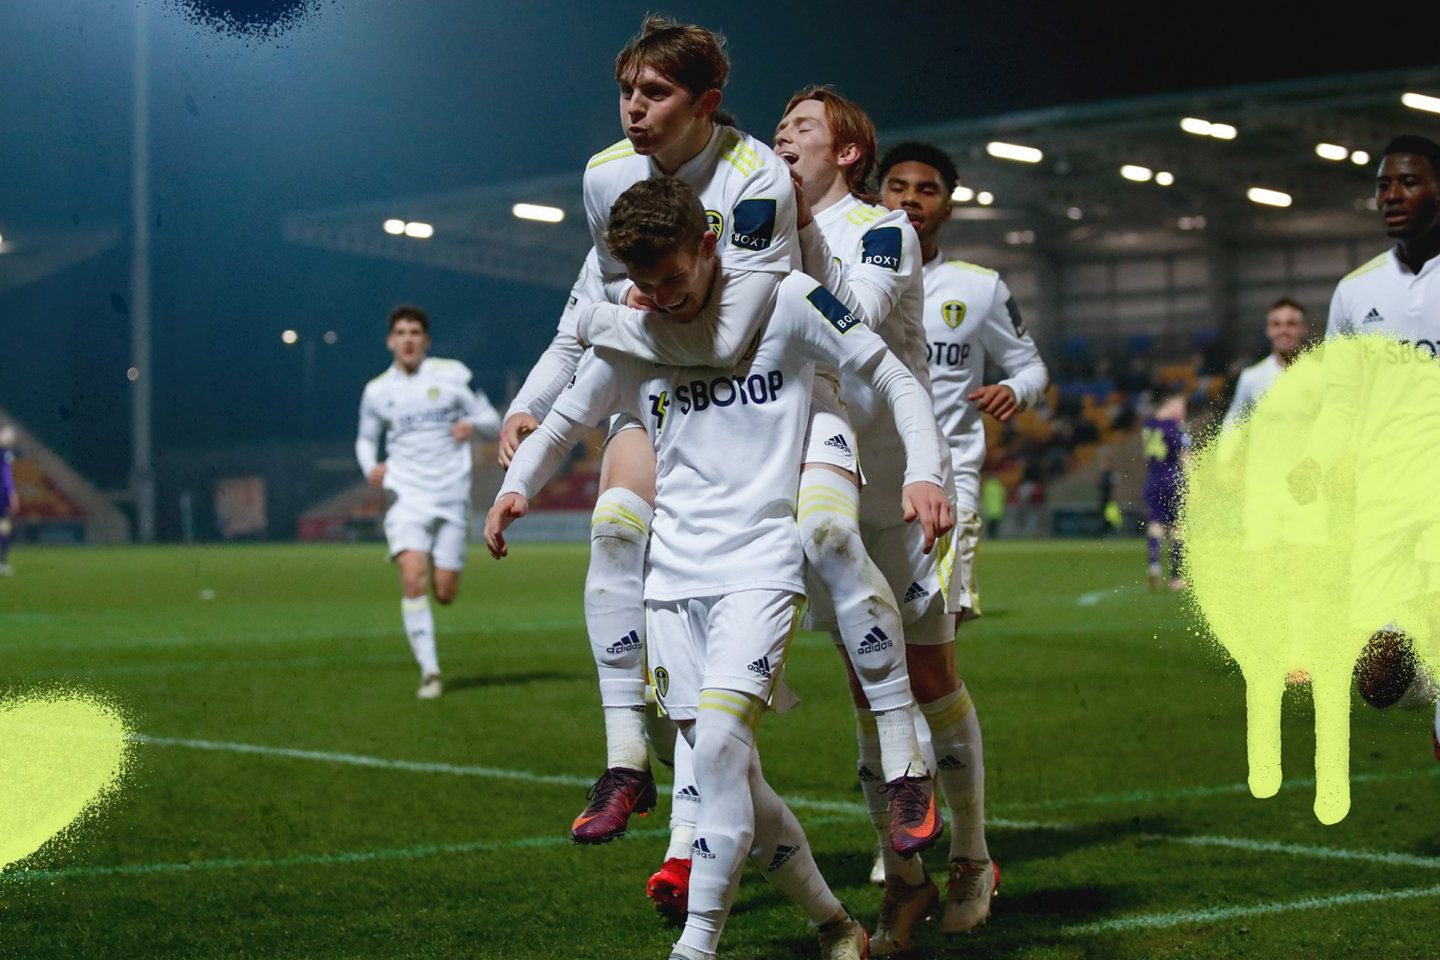 SELEBRASI: Punggawa Leeds United merayakan kemenangan. (@LUFC/TWITTER)